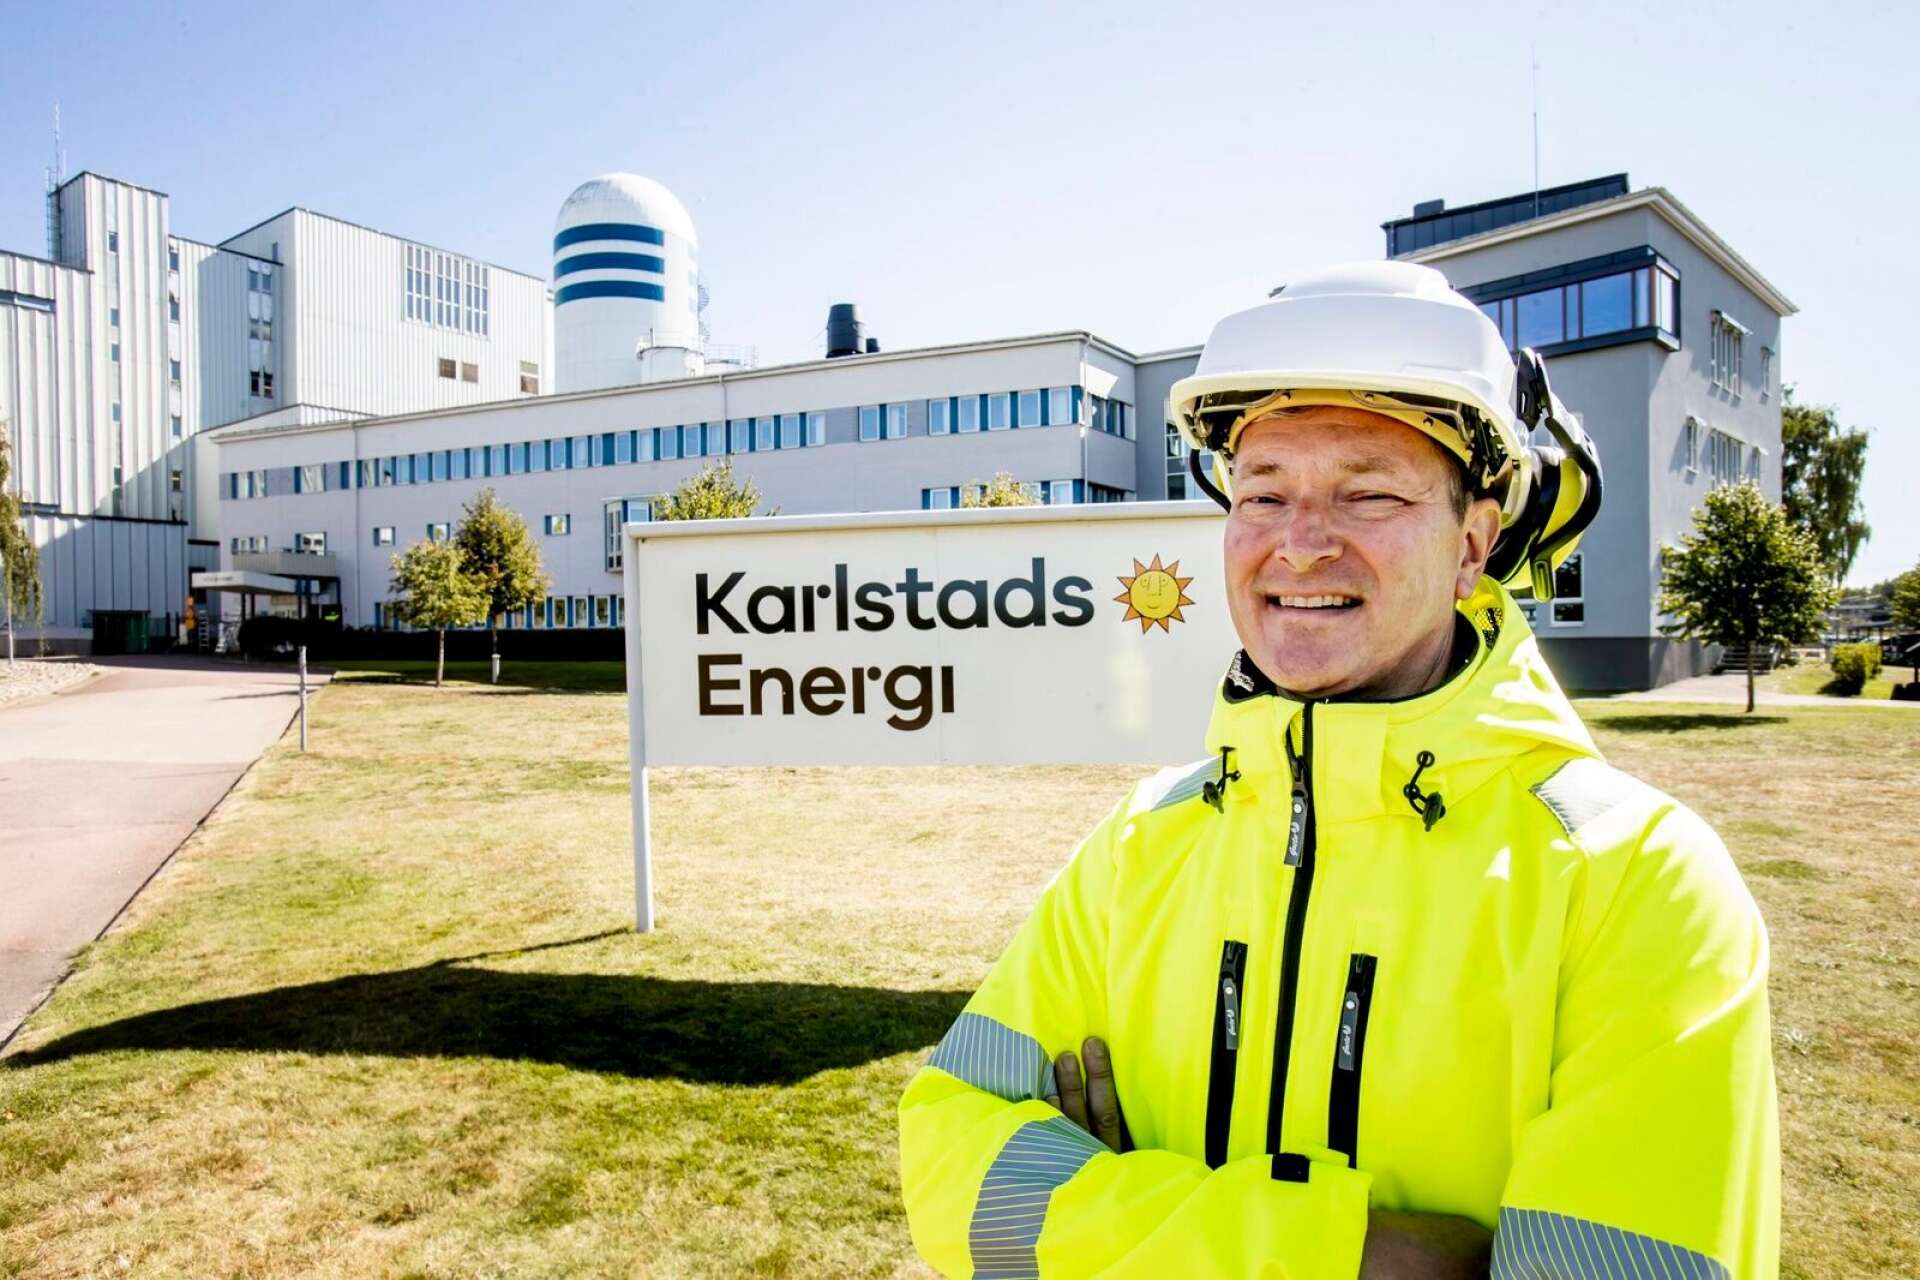 ”Vi ska bygga ut den förnybara produktionen. Först genom en satsning på solenergi och på sikt även vindkraft”, säger Karlstads energis vd:n Erik Kornfeld.